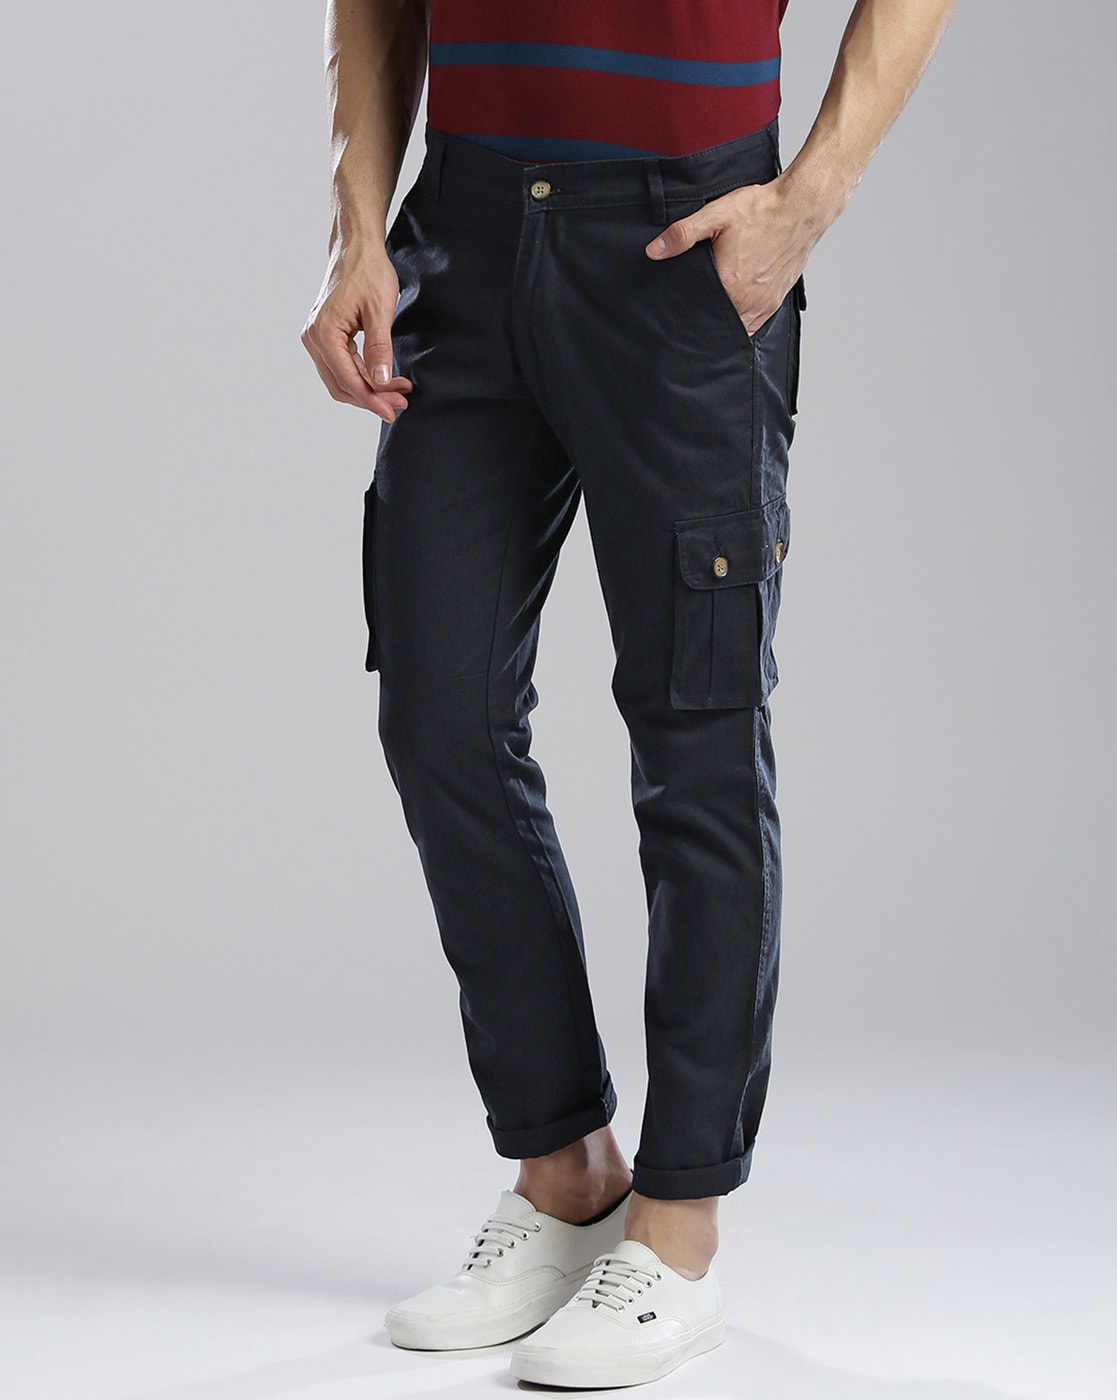 Buy Grey Trousers & Pants for Men by Hubberholme Online | Ajio.com